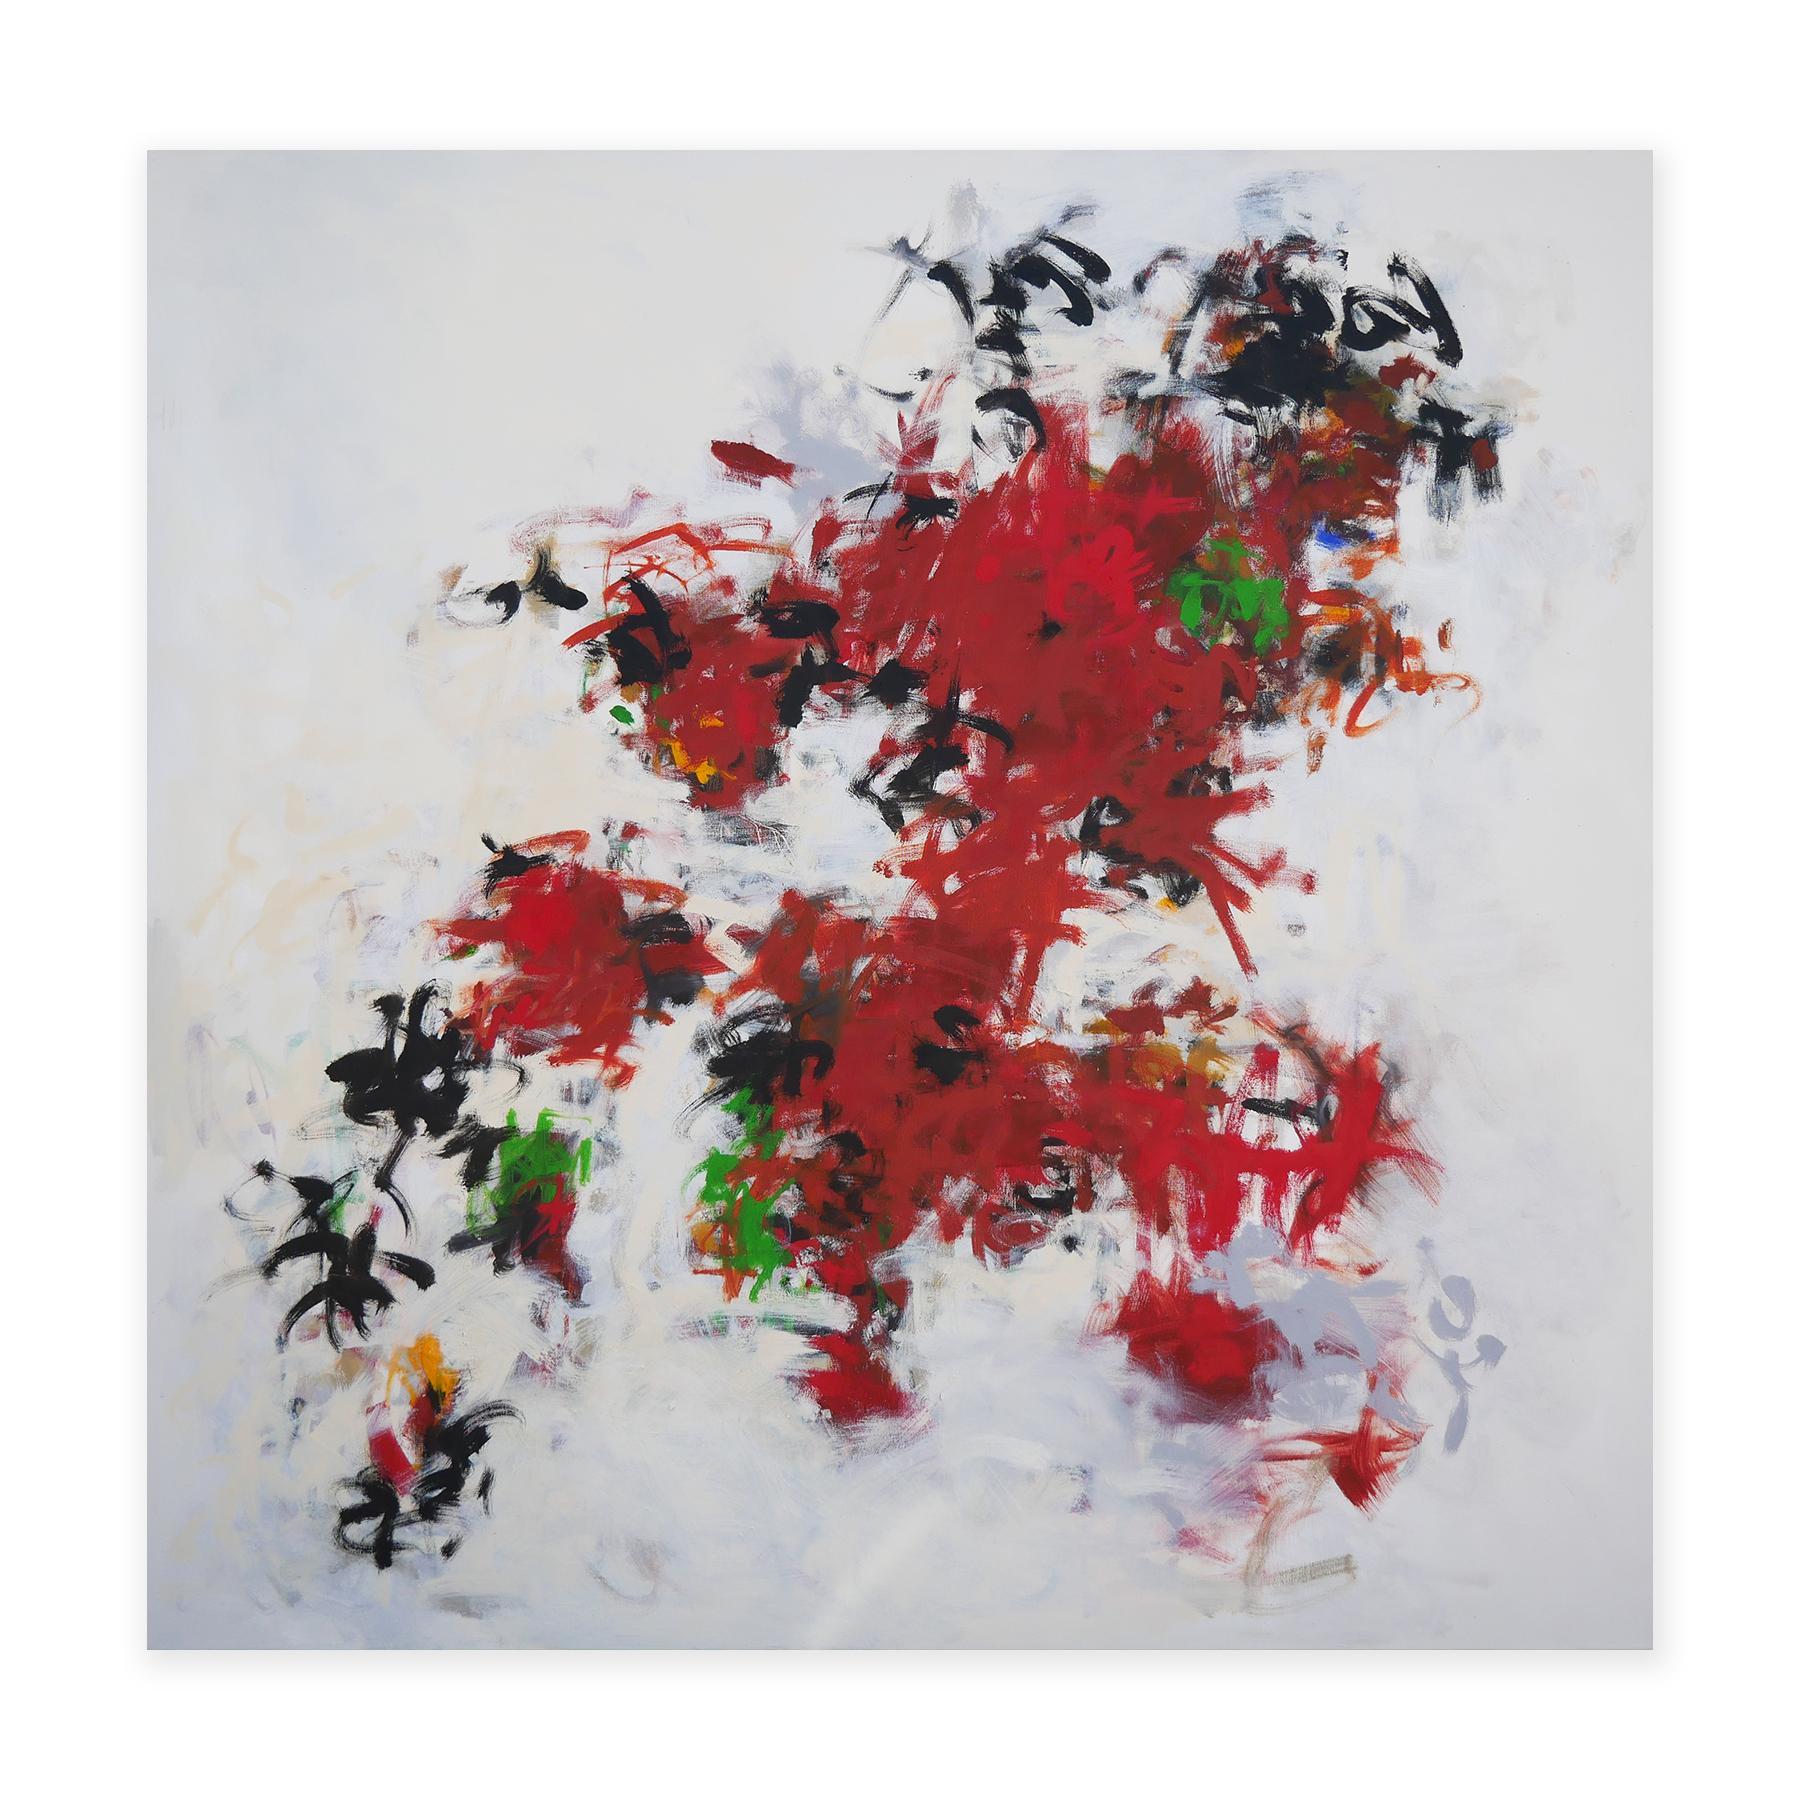 « Untitled 80 » - Grande peinture expressionniste abstraite rouge, noire et verte - Painting de Gerald Syler